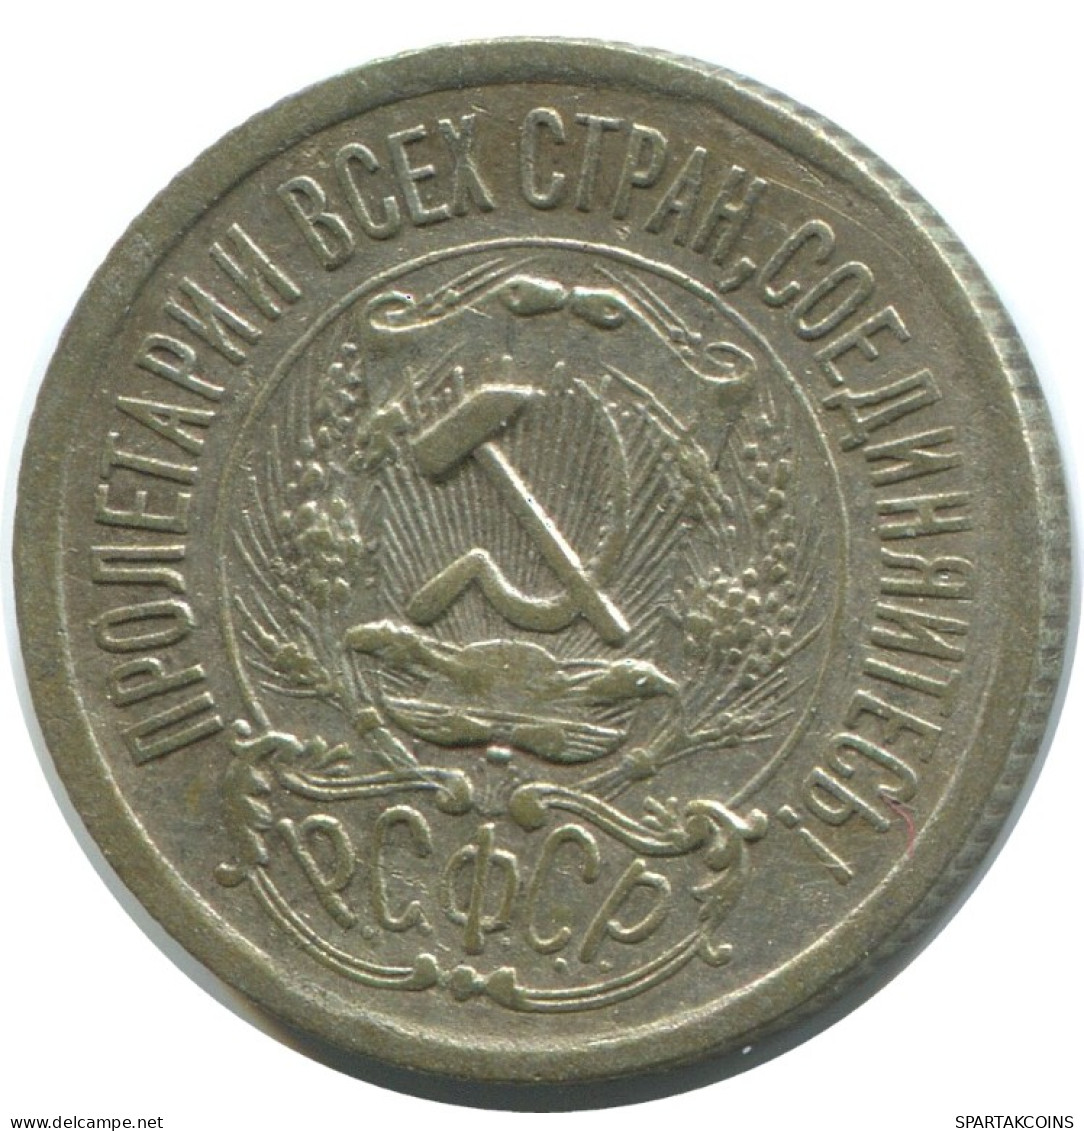 15 KOPEKS 1923 RUSSIA RSFSR SILVER Coin HIGH GRADE #AF166.4.U.A - Rusland